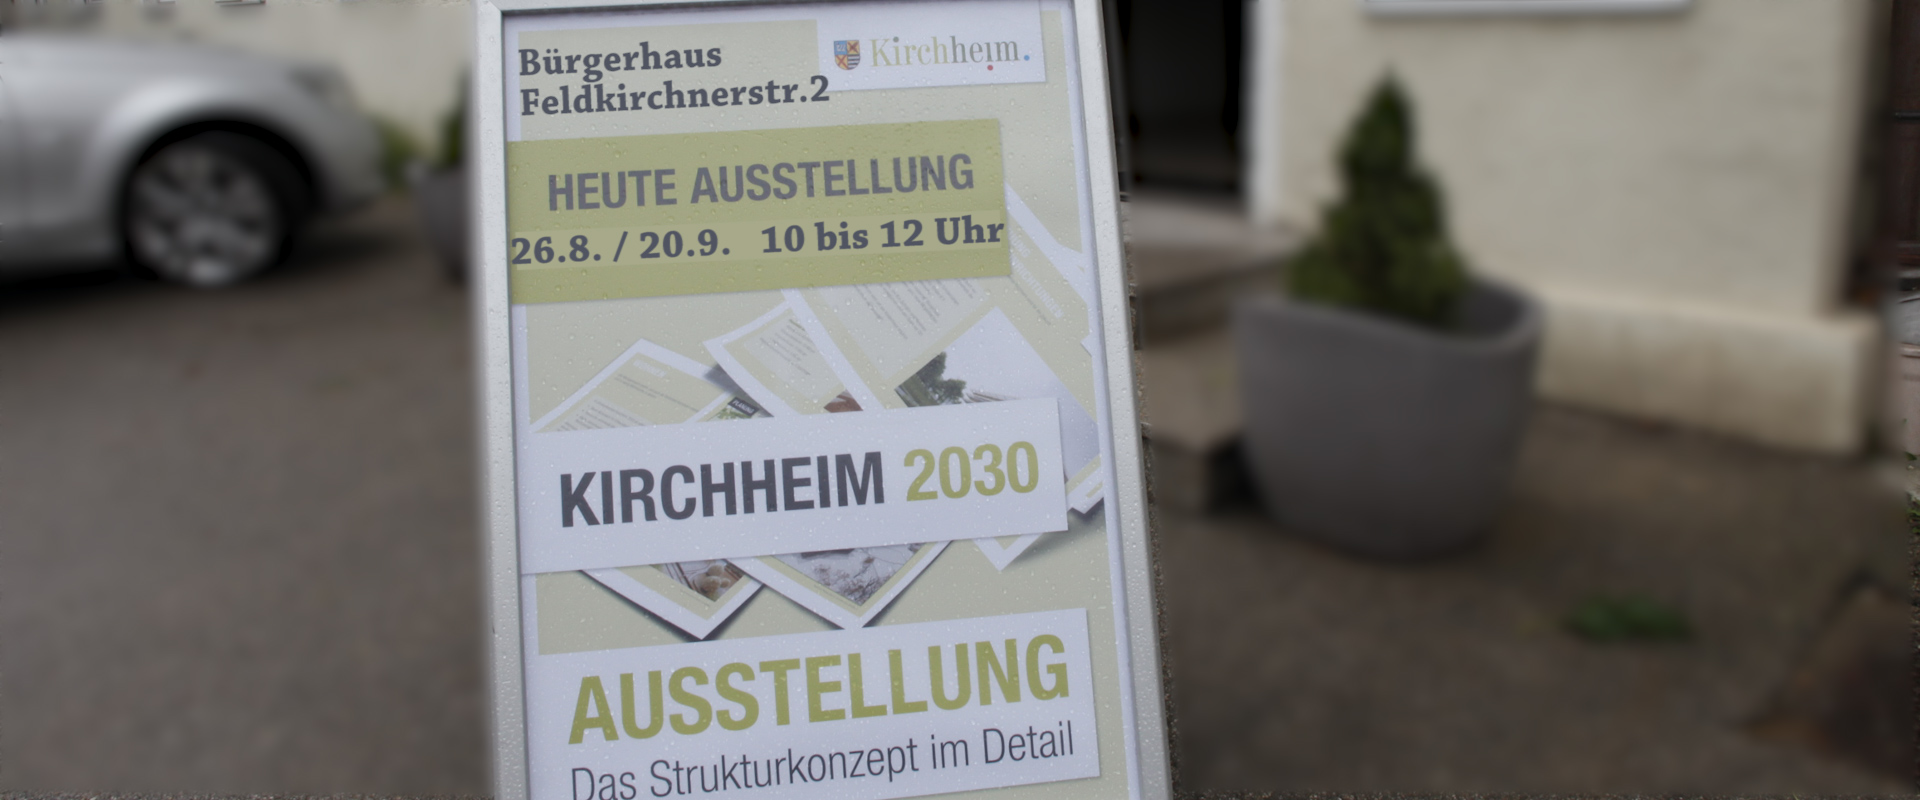 Kirchheim 2030